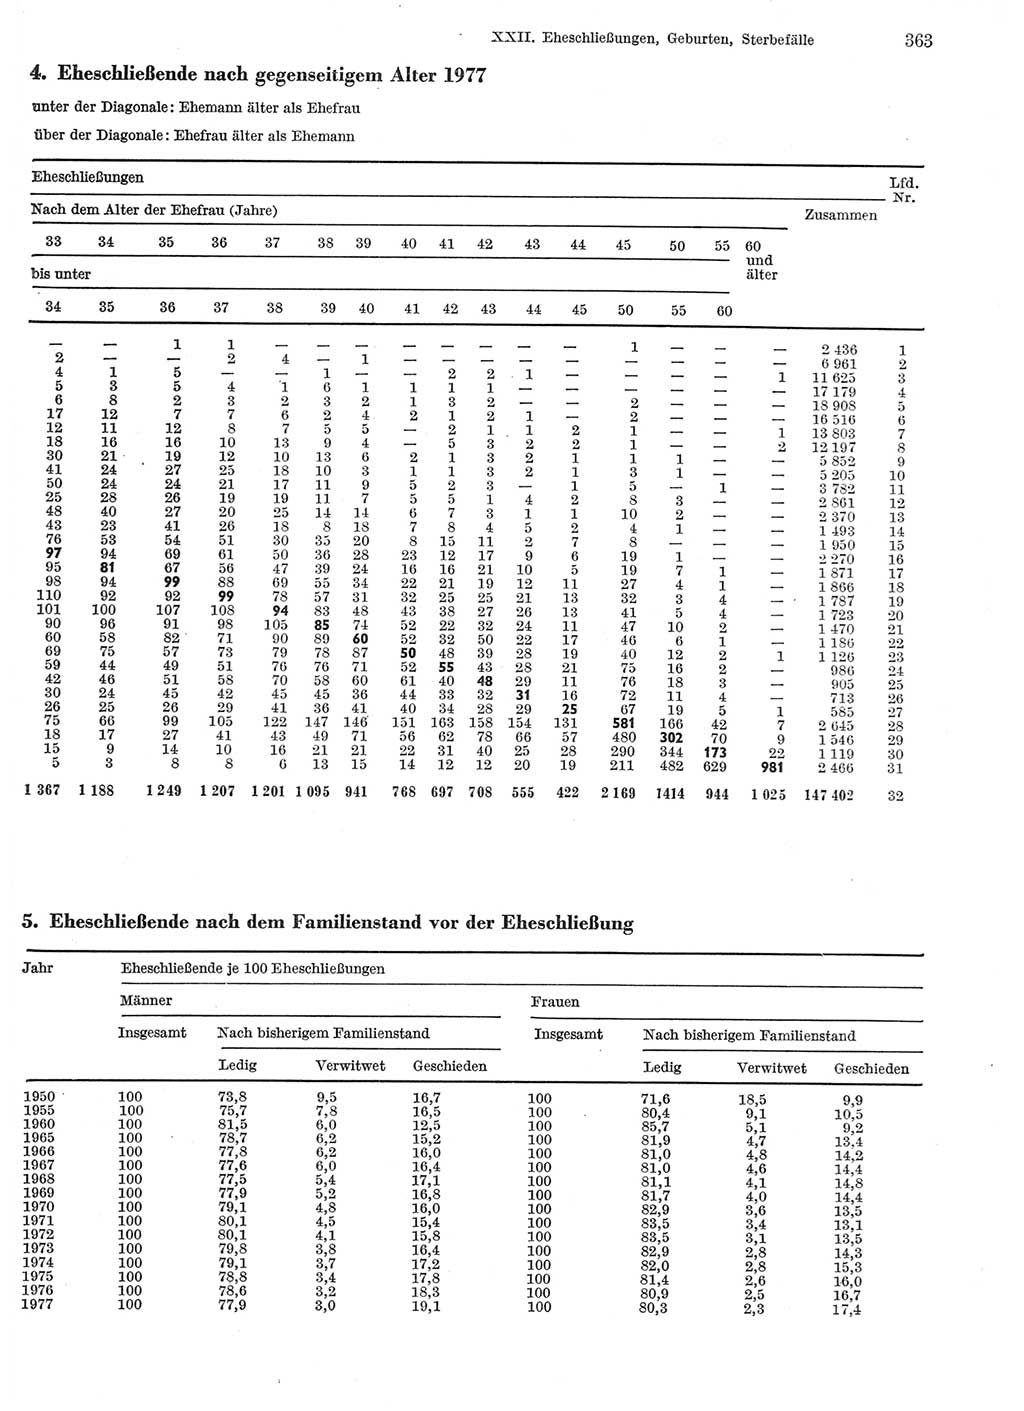 Statistisches Jahrbuch der Deutschen Demokratischen Republik (DDR) 1979, Seite 363 (Stat. Jb. DDR 1979, S. 363)